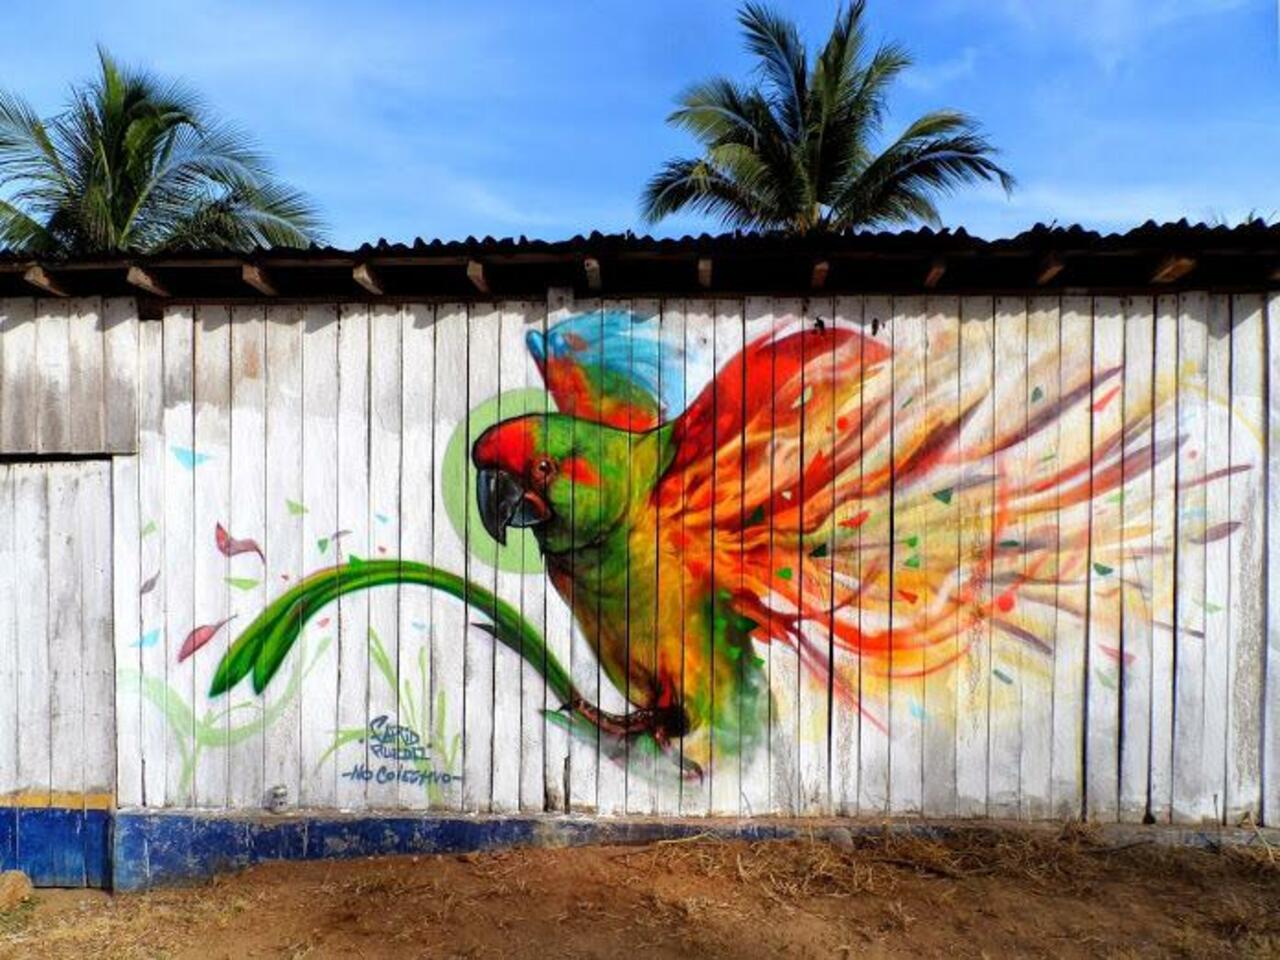 Farid Rueda
Michoacán, Mexico
#streetart #art #graffiti #mural http://t.co/8ojTXFjCU8